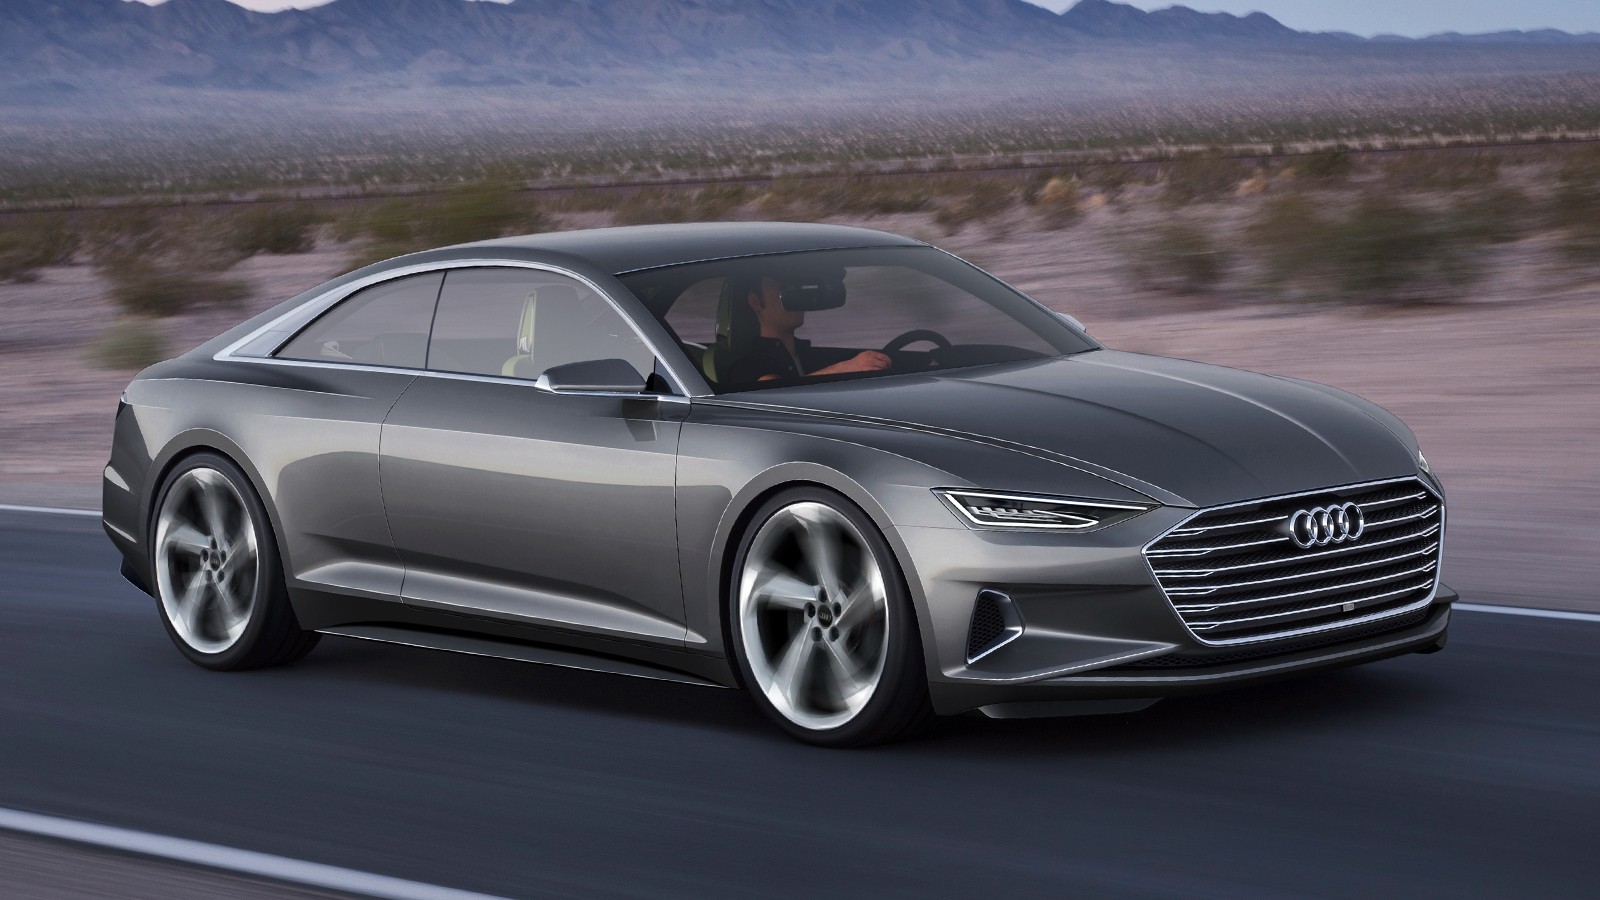 Audi prologue concept — прообраз нового A8